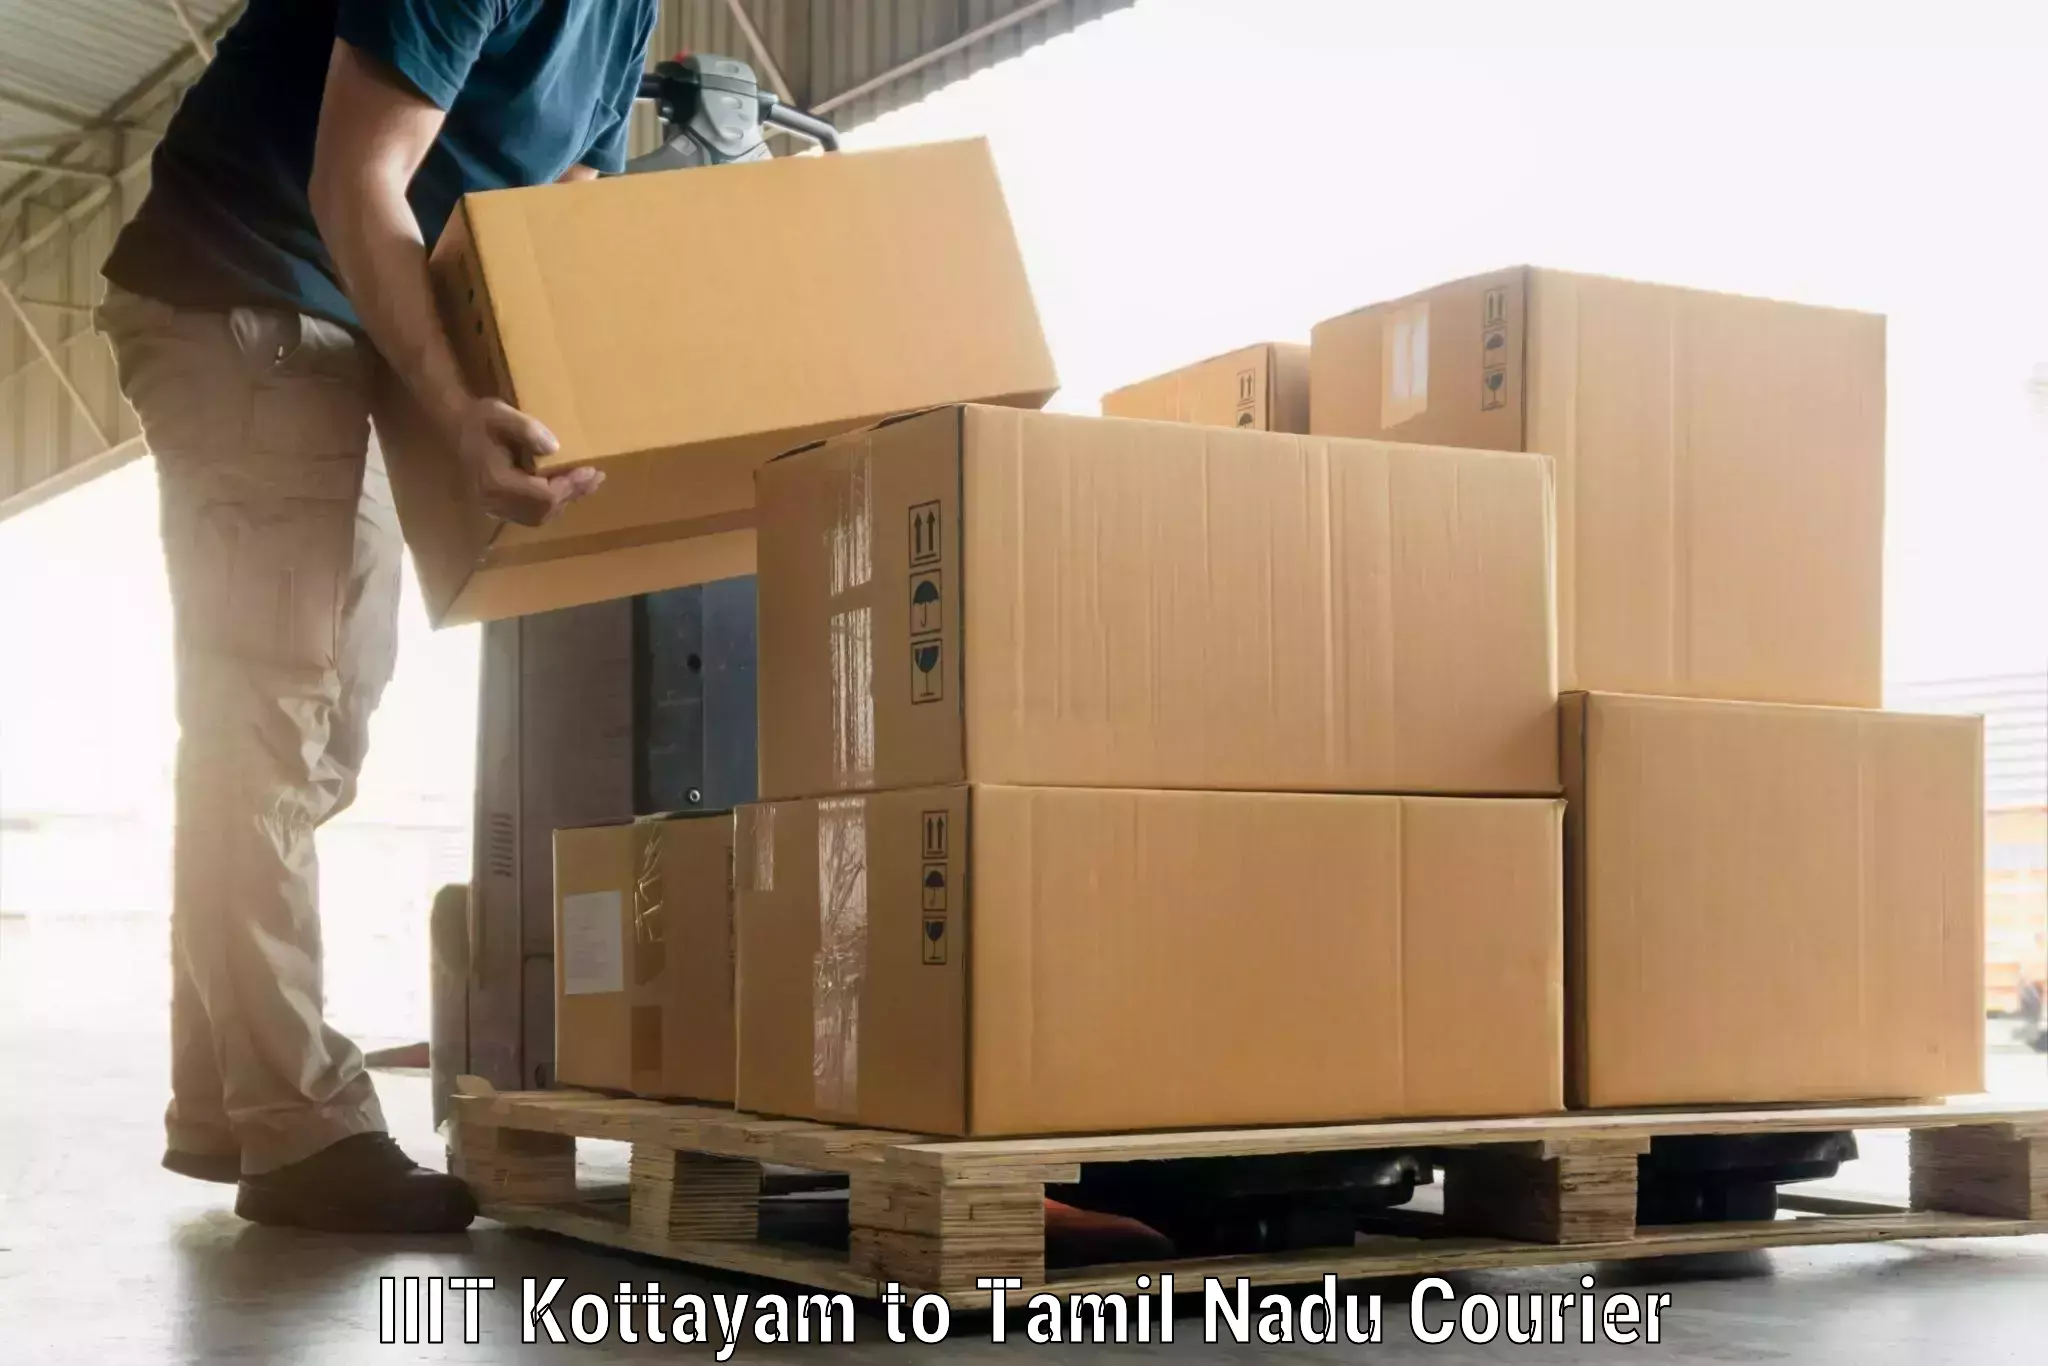 Luggage delivery estimate IIIT Kottayam to Tirunelveli